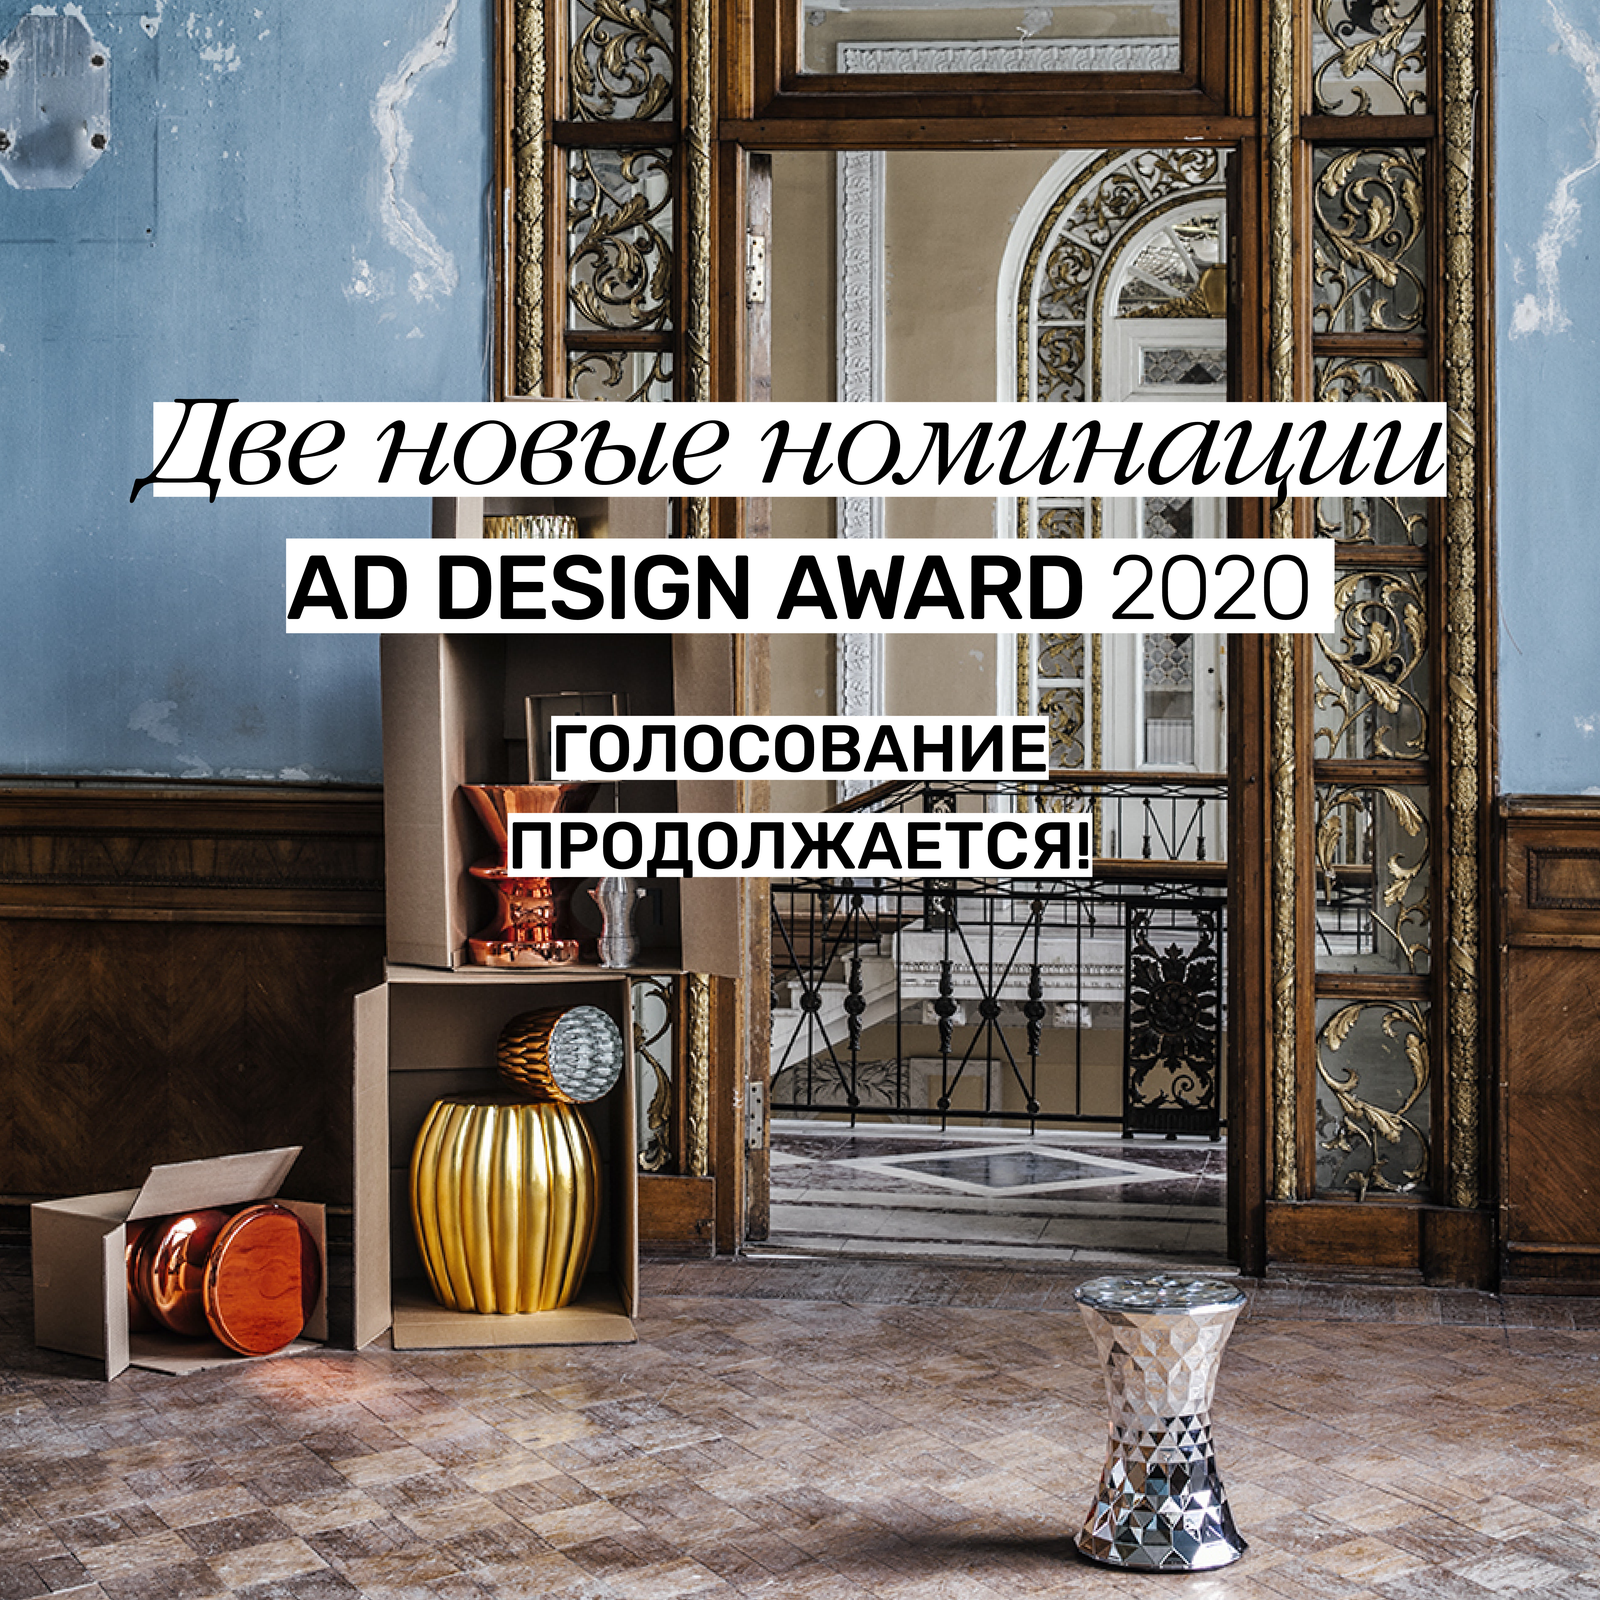 AD Design Award 2020 мы вновь открываем голосование с двумя новыми номинациями